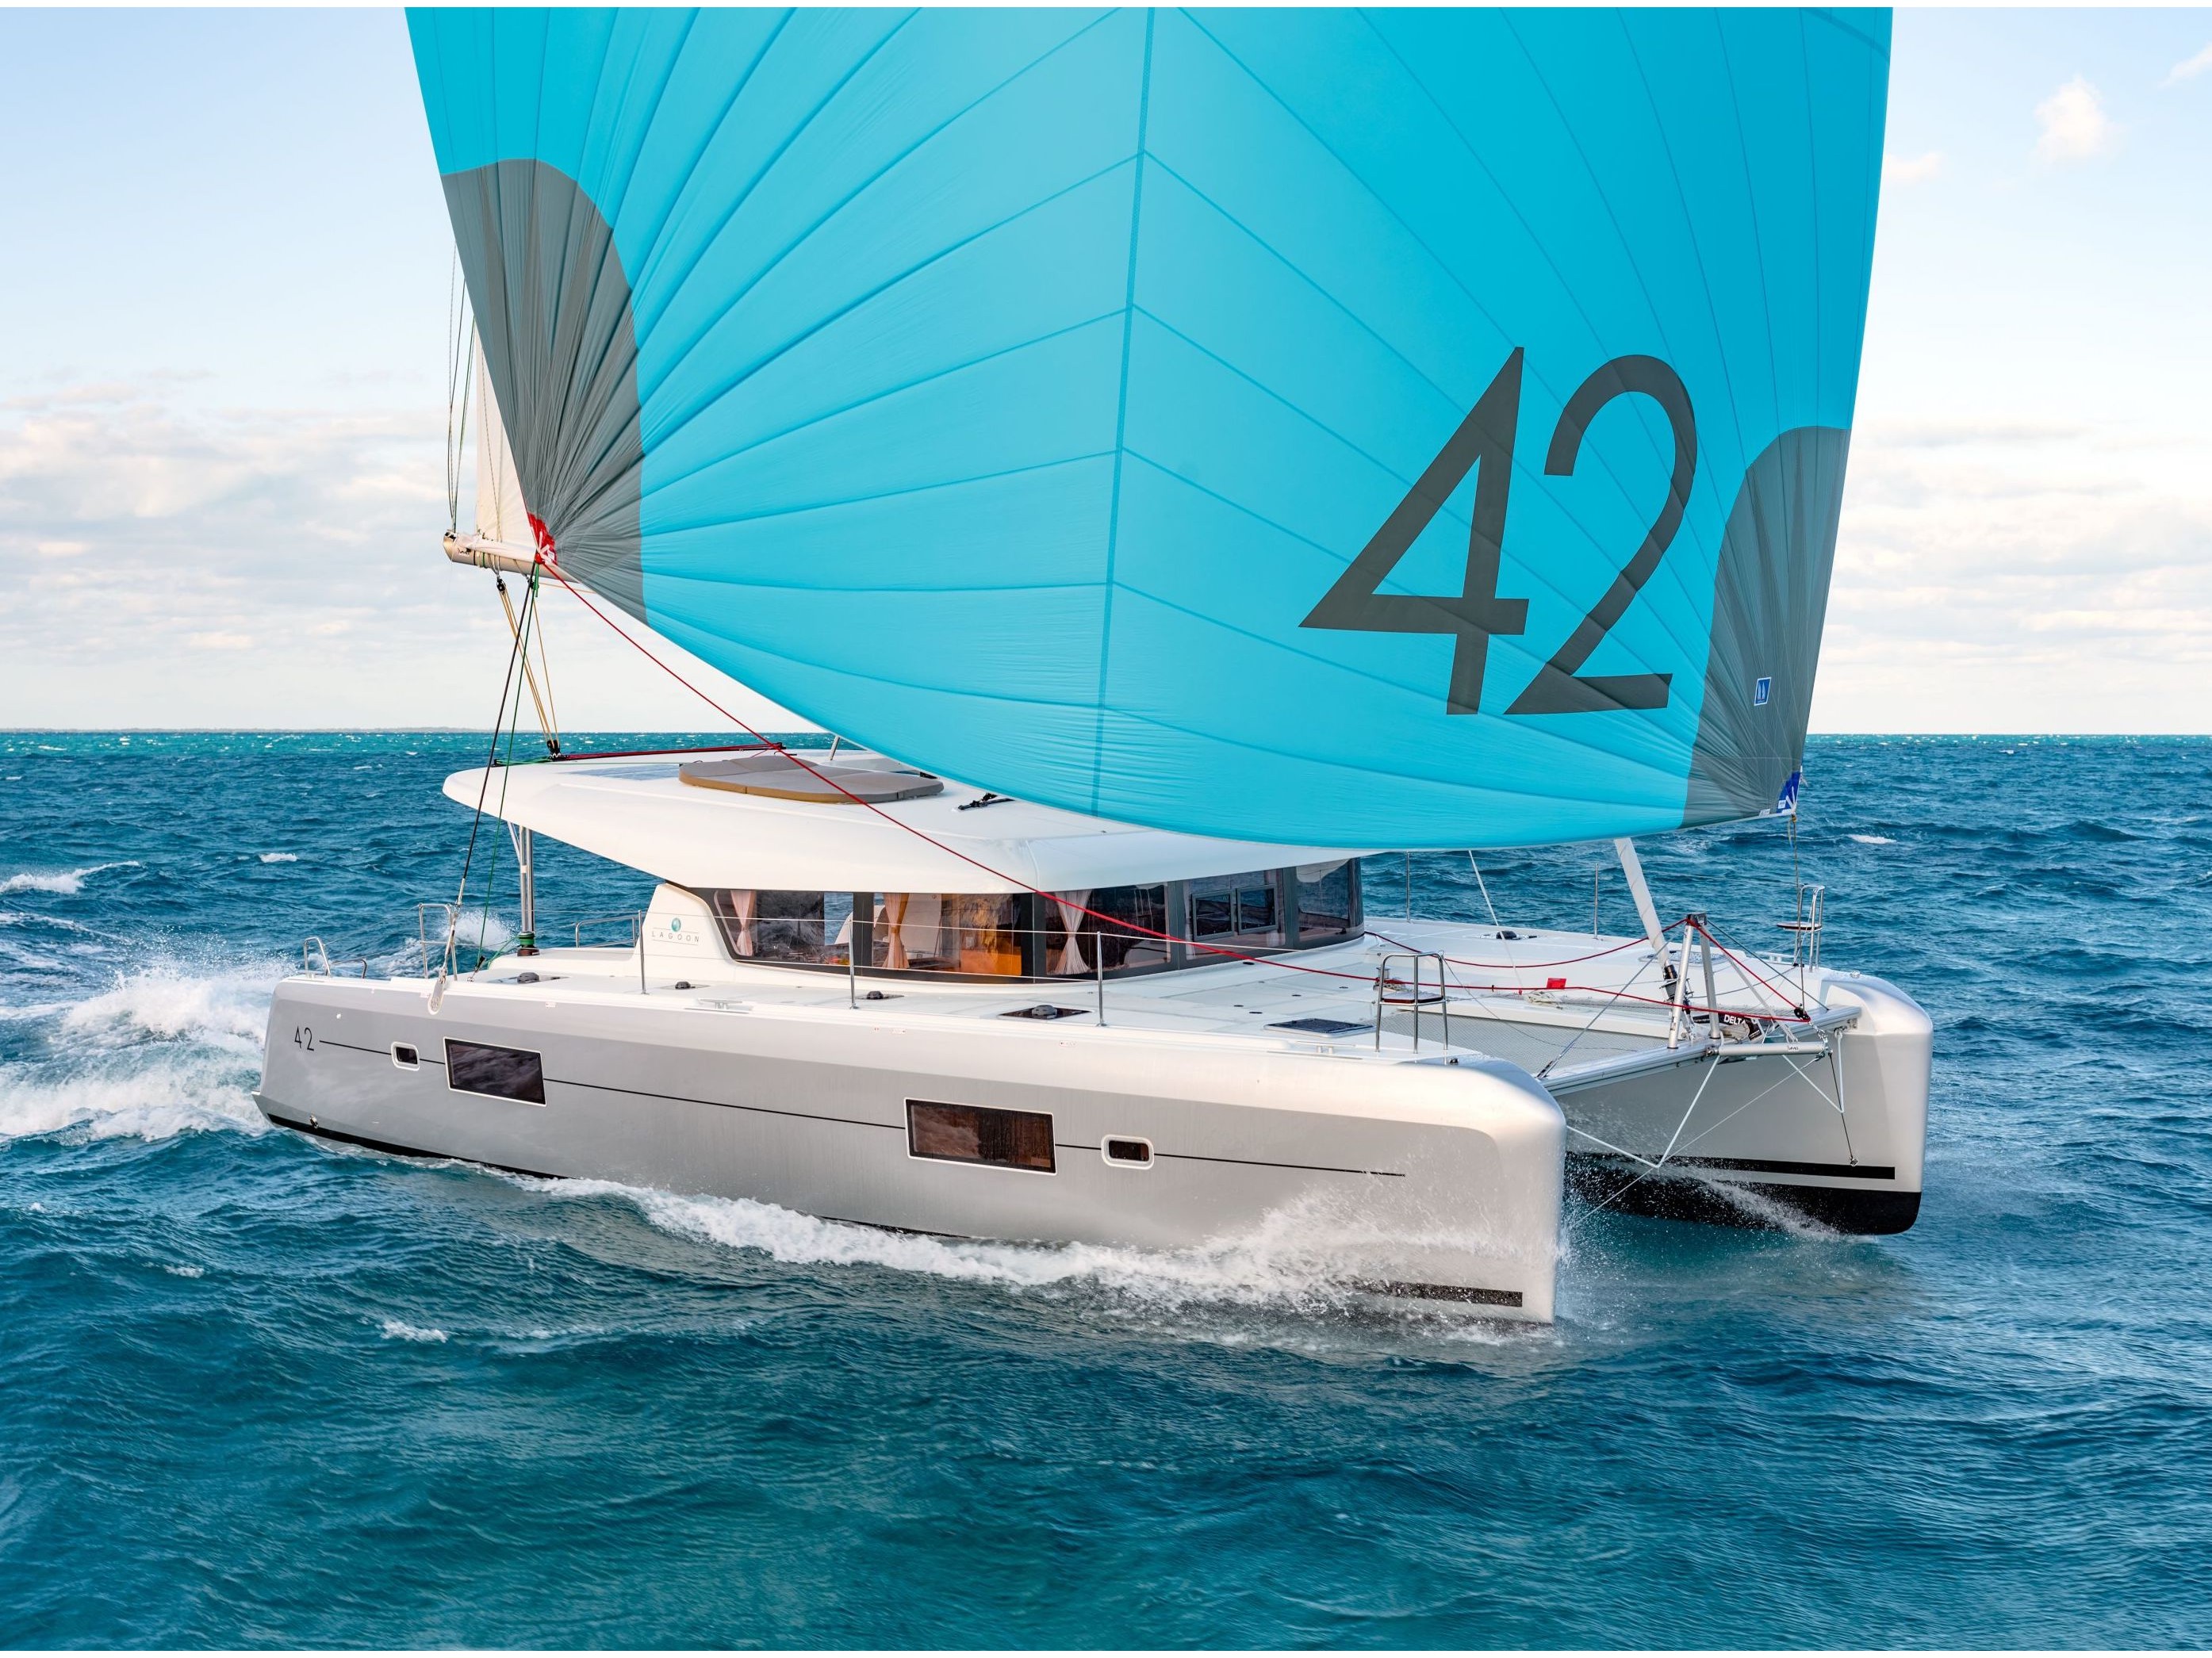 Lagoon 42 - Luxury yacht charter Italy & Boat hire in Italy Sicily Aeolian Islands Capo d'Orlando Capo d'Orlando Marina 2